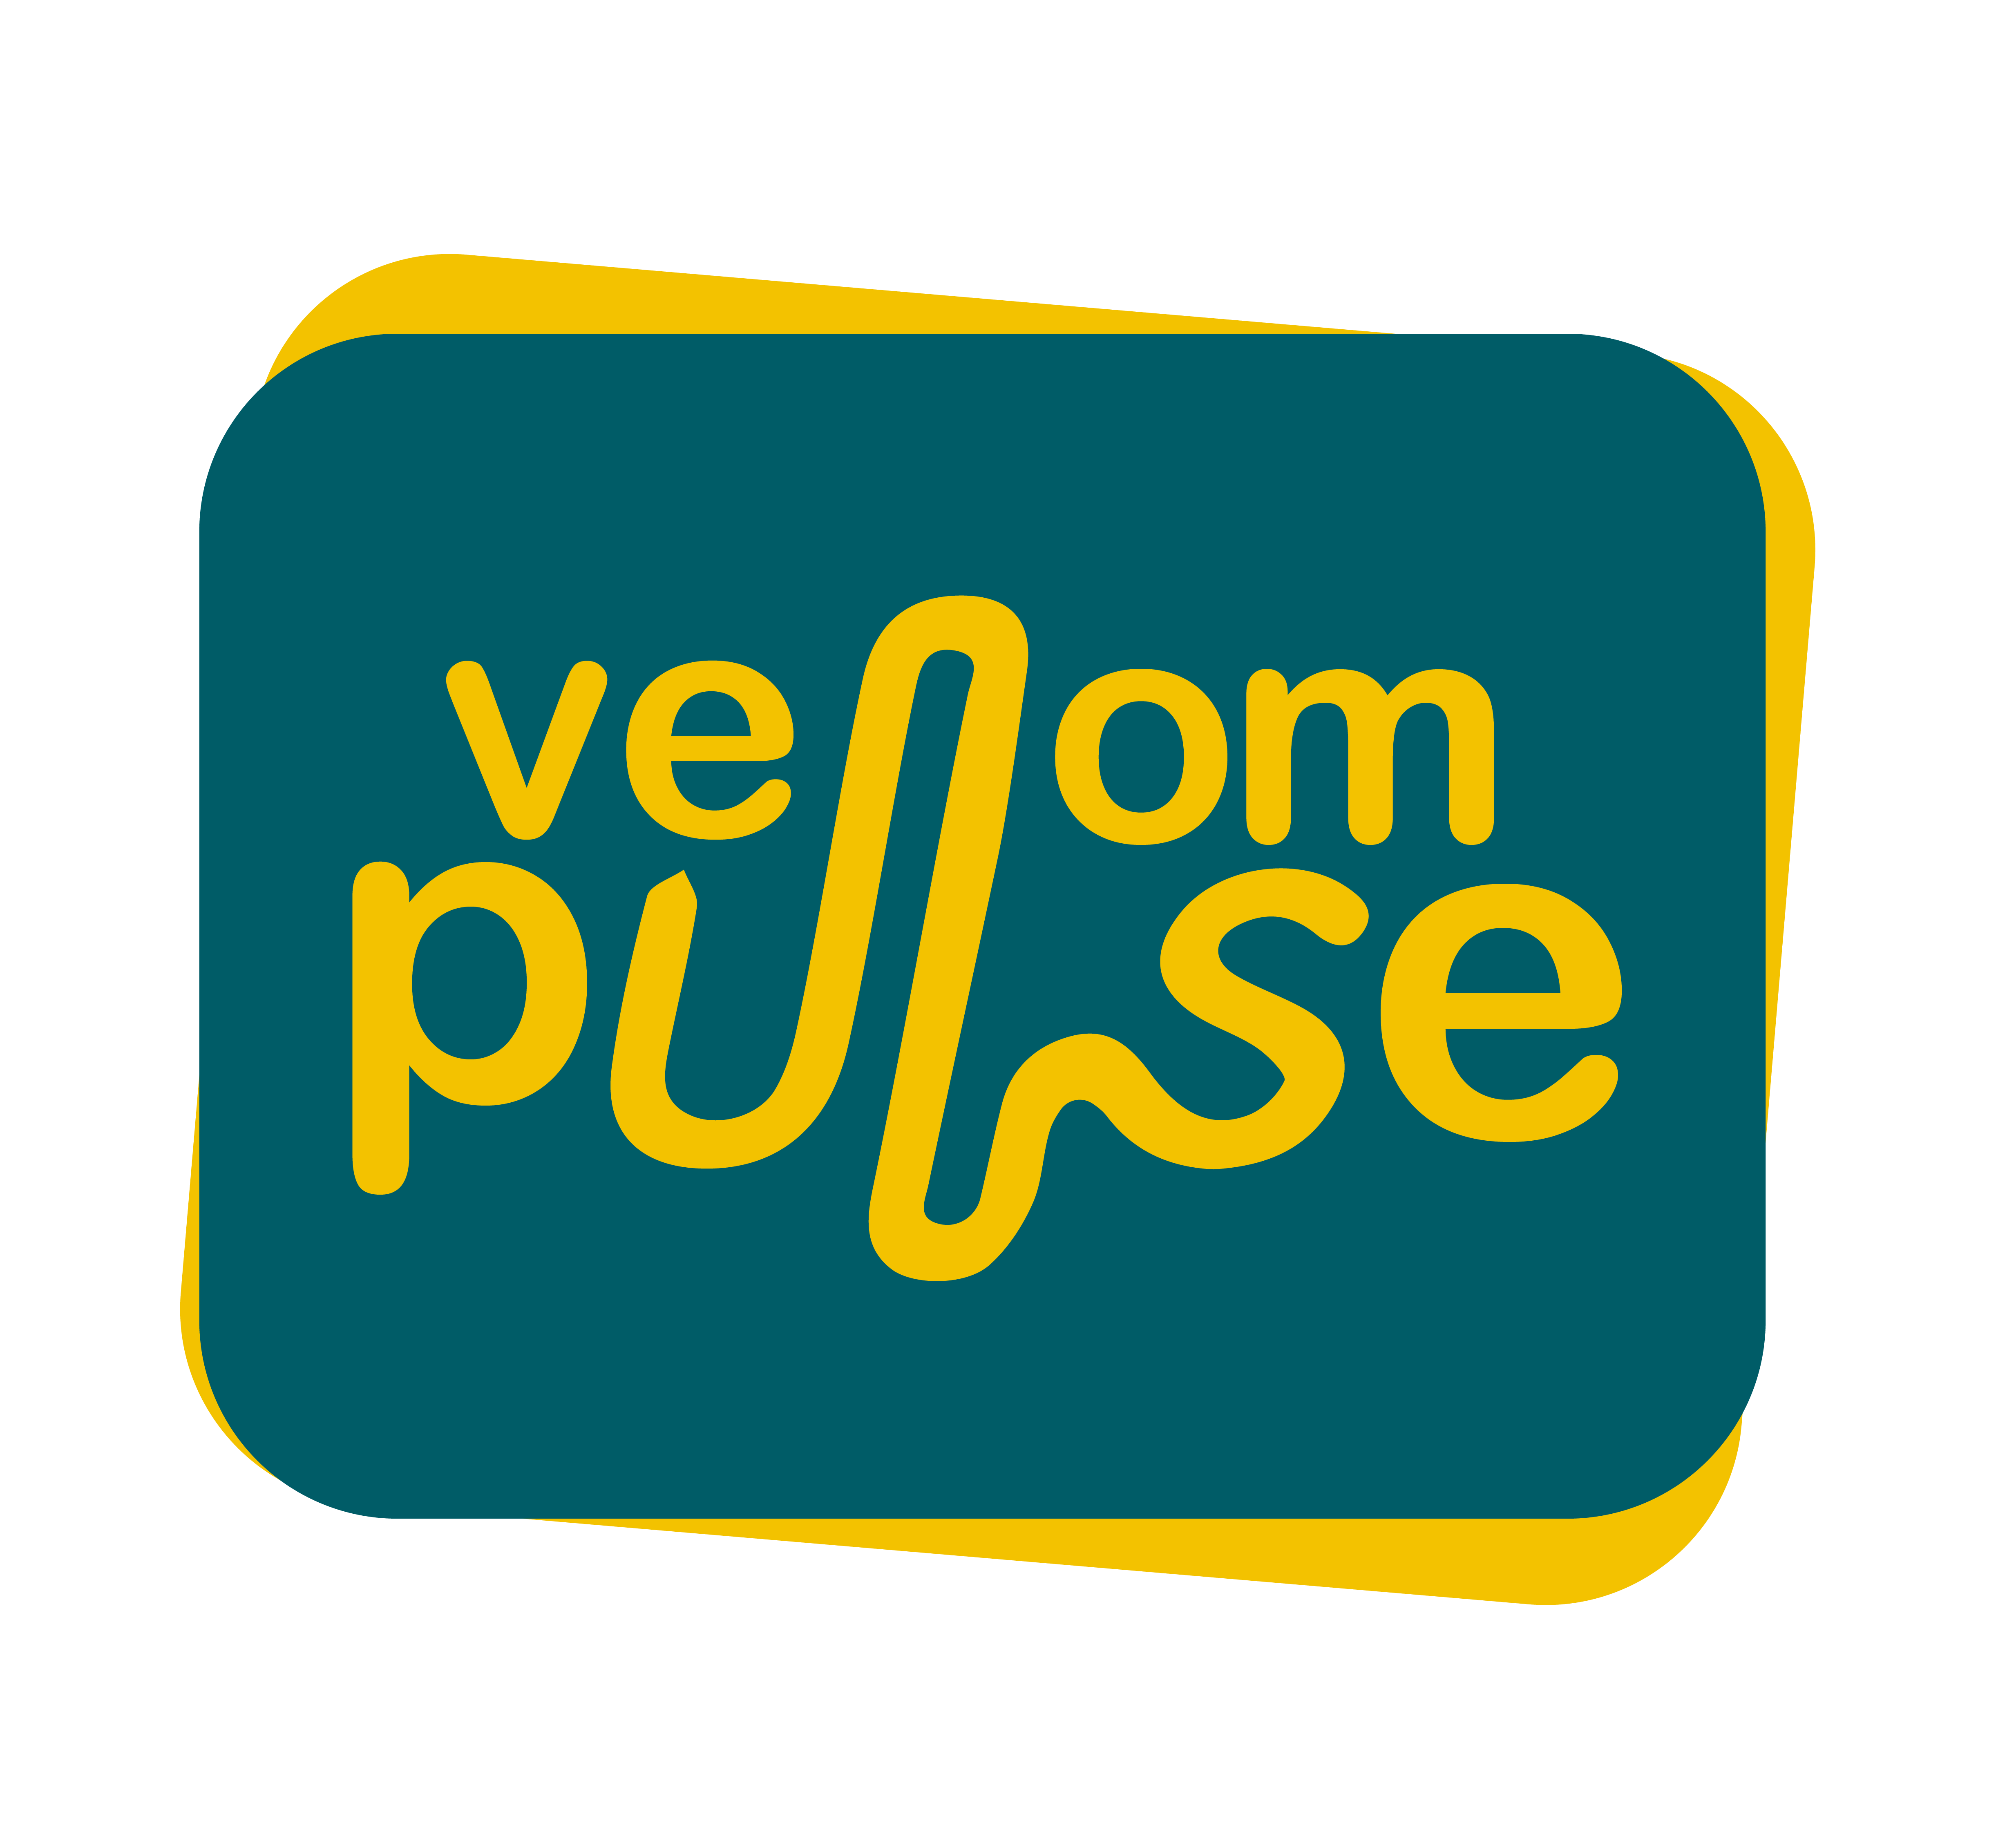 venompulse logo